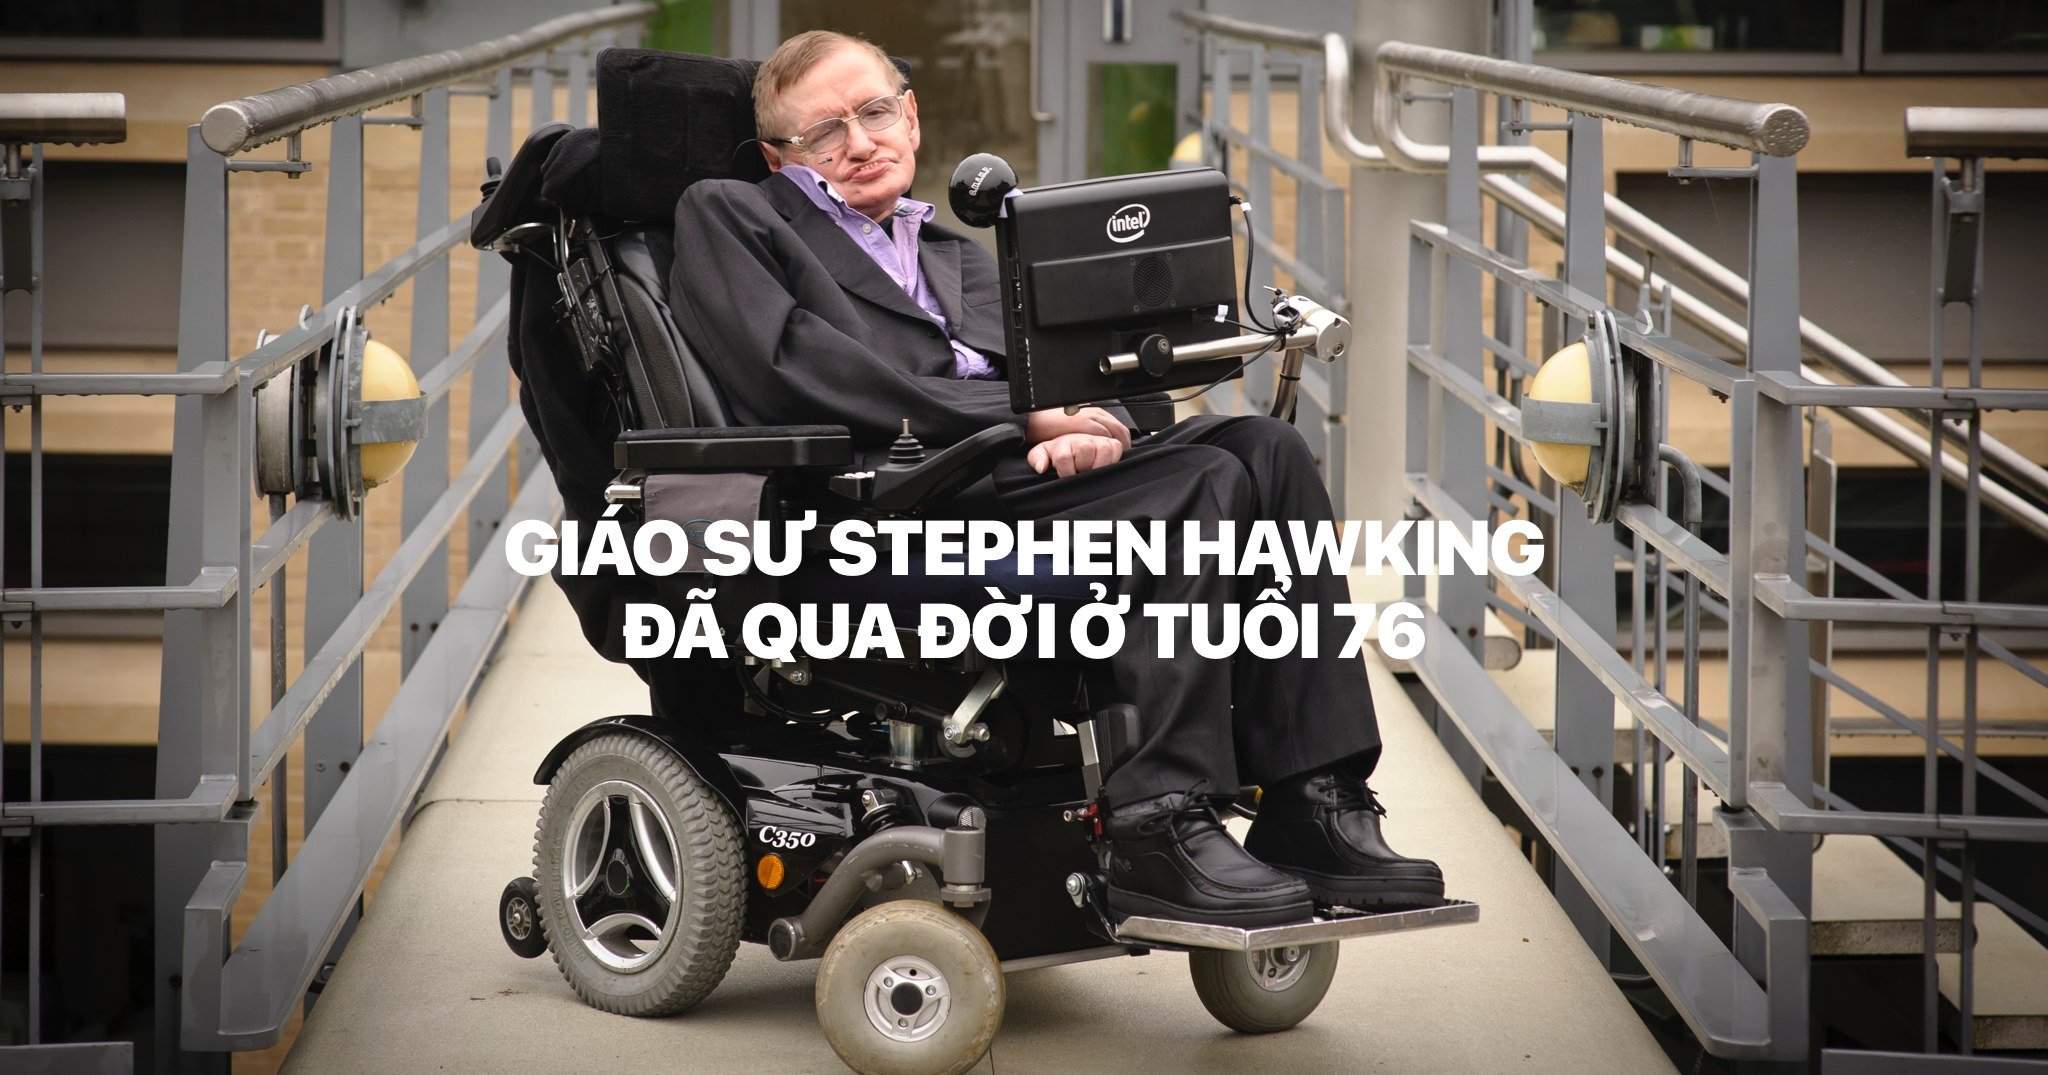 Thiên tài vật lý Stephen Hawking đã qua đời hôm nay ở tuổi 76